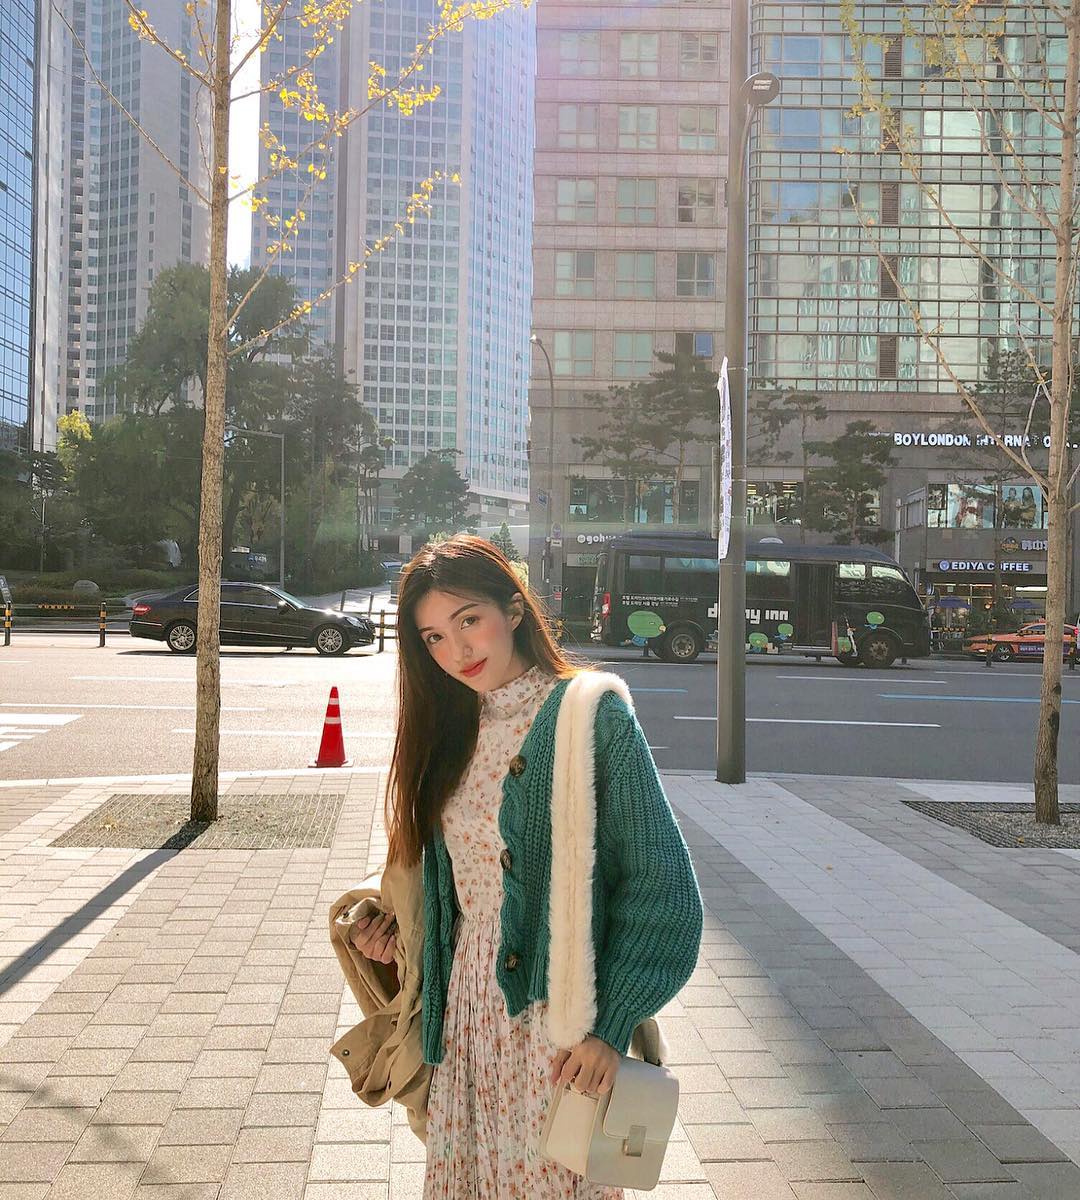  Sau màn đêm luôn là mặt trời tươi sáng ☀️✨ Mong cuộc sống sẽ dễ dàng hơn với mình trong năm nay. 
Váy, áo khoác: @room71.sk 
#vivuvoisue #travel #korea #seoul #street